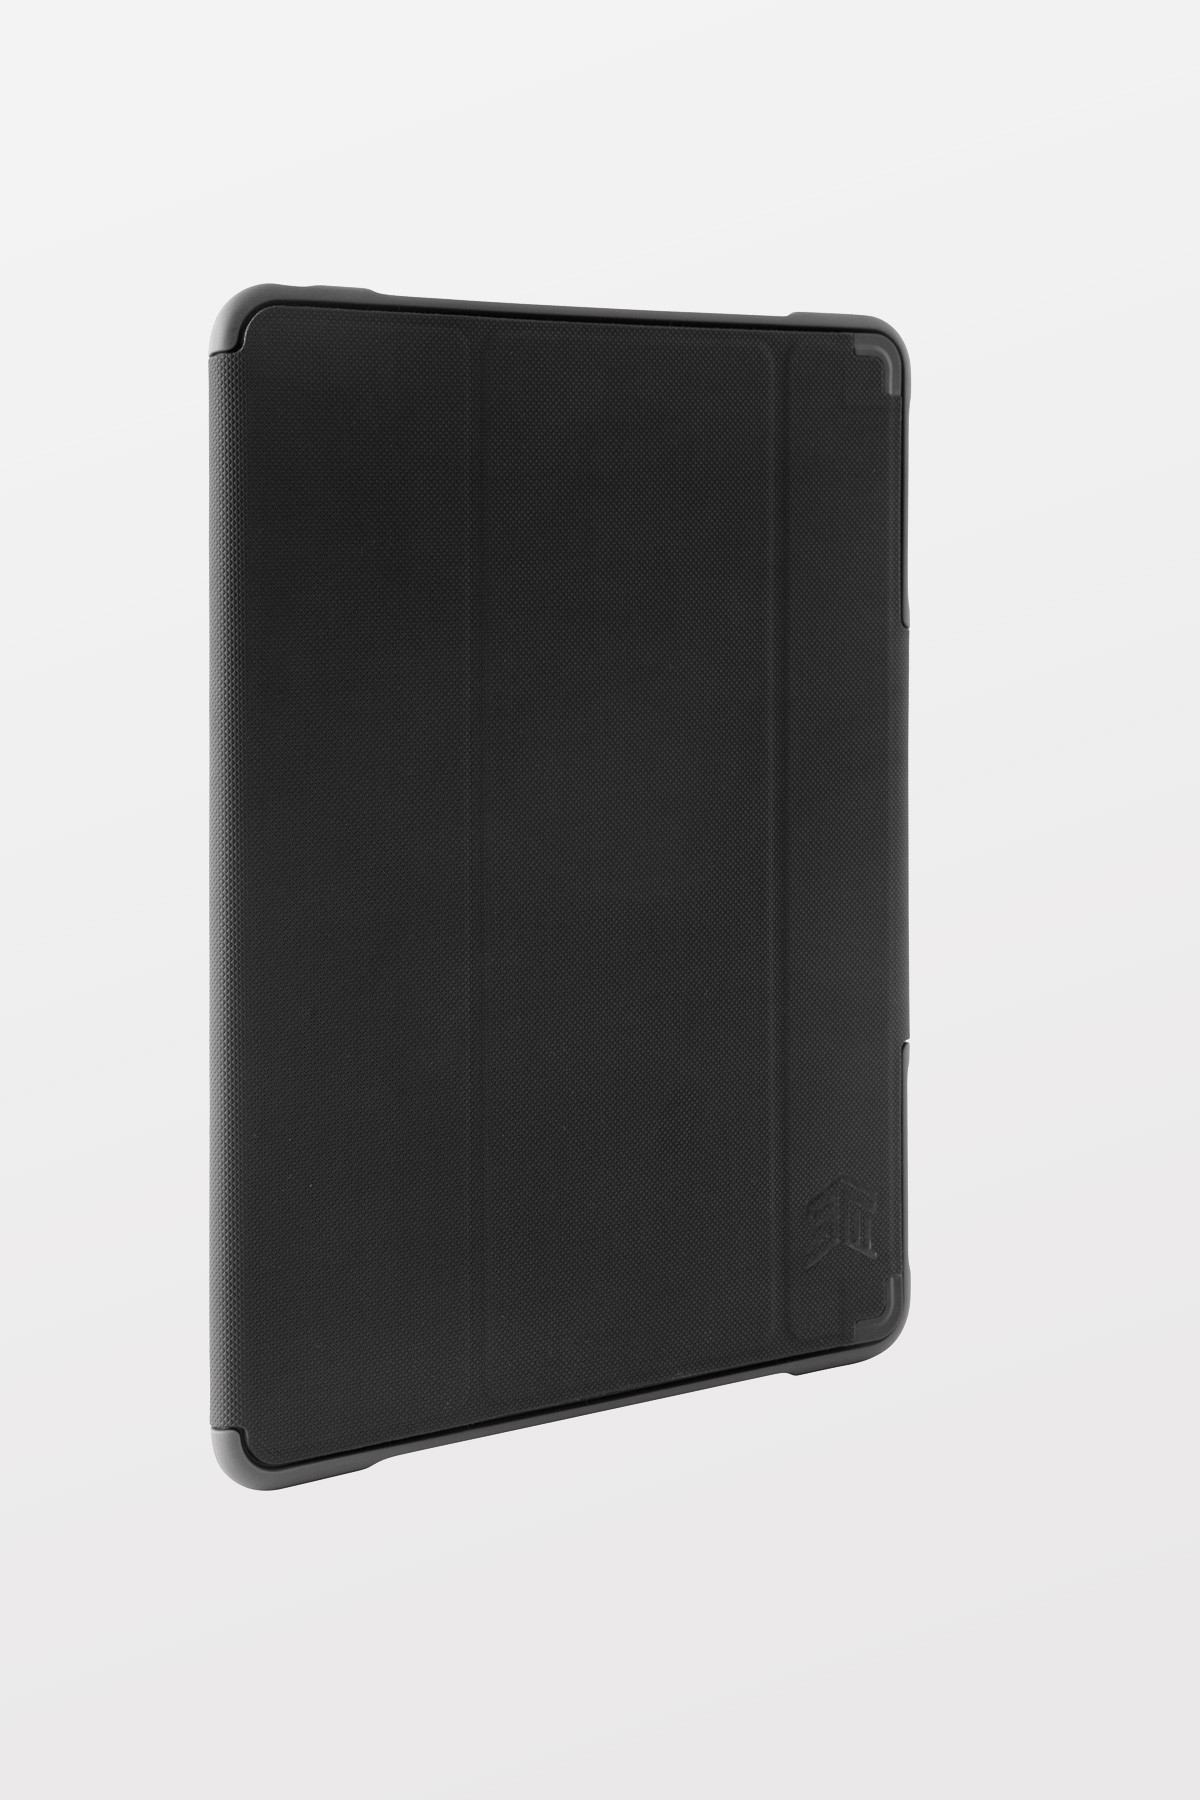 STM Dux Case for iPad (5th/6th gen) - Black